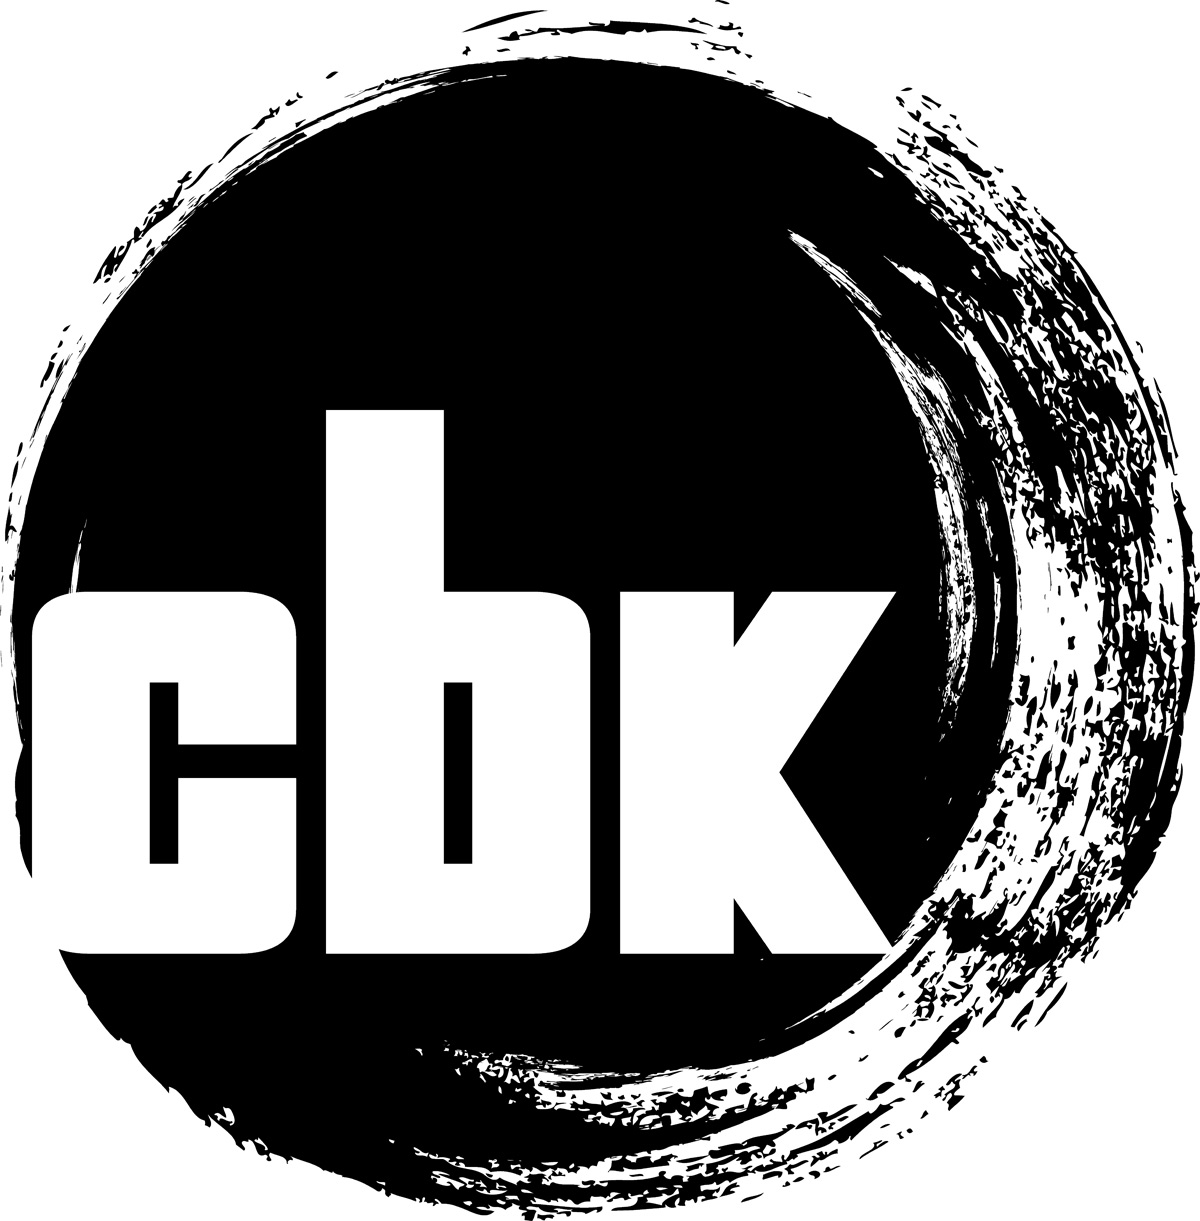 cbk_logo